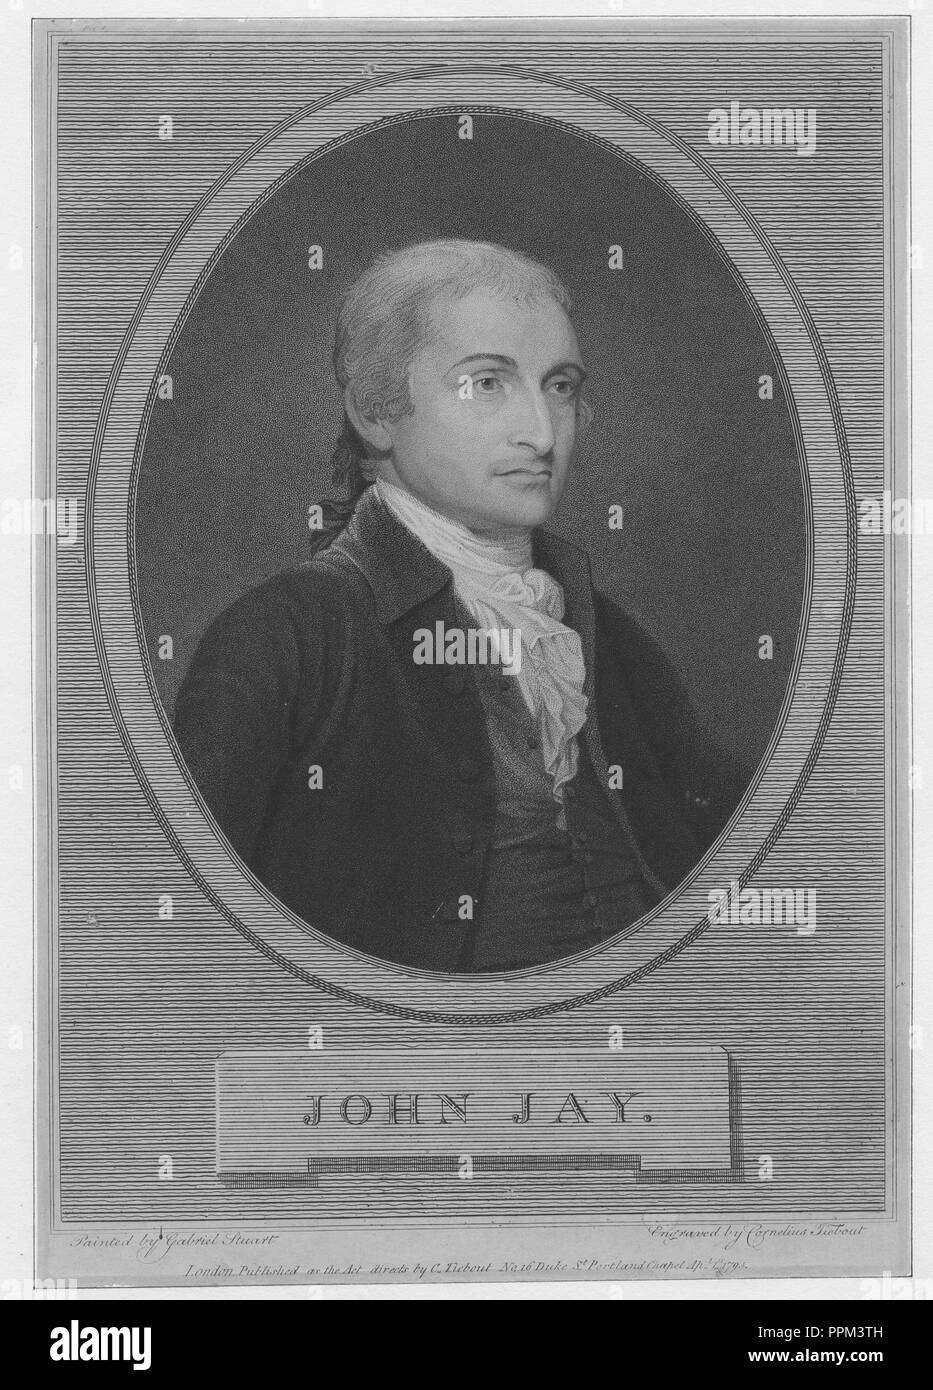 Graviert Portrait von John Jay, Gründervater der Vereinigten Staaten und der erste Präsident des Obersten Gerichtshofs der Vereinigten Staaten, ein amerikanischer Staatsmann und Diplomat aus New York, 1842. Von der New York Public Library. () Stockfoto